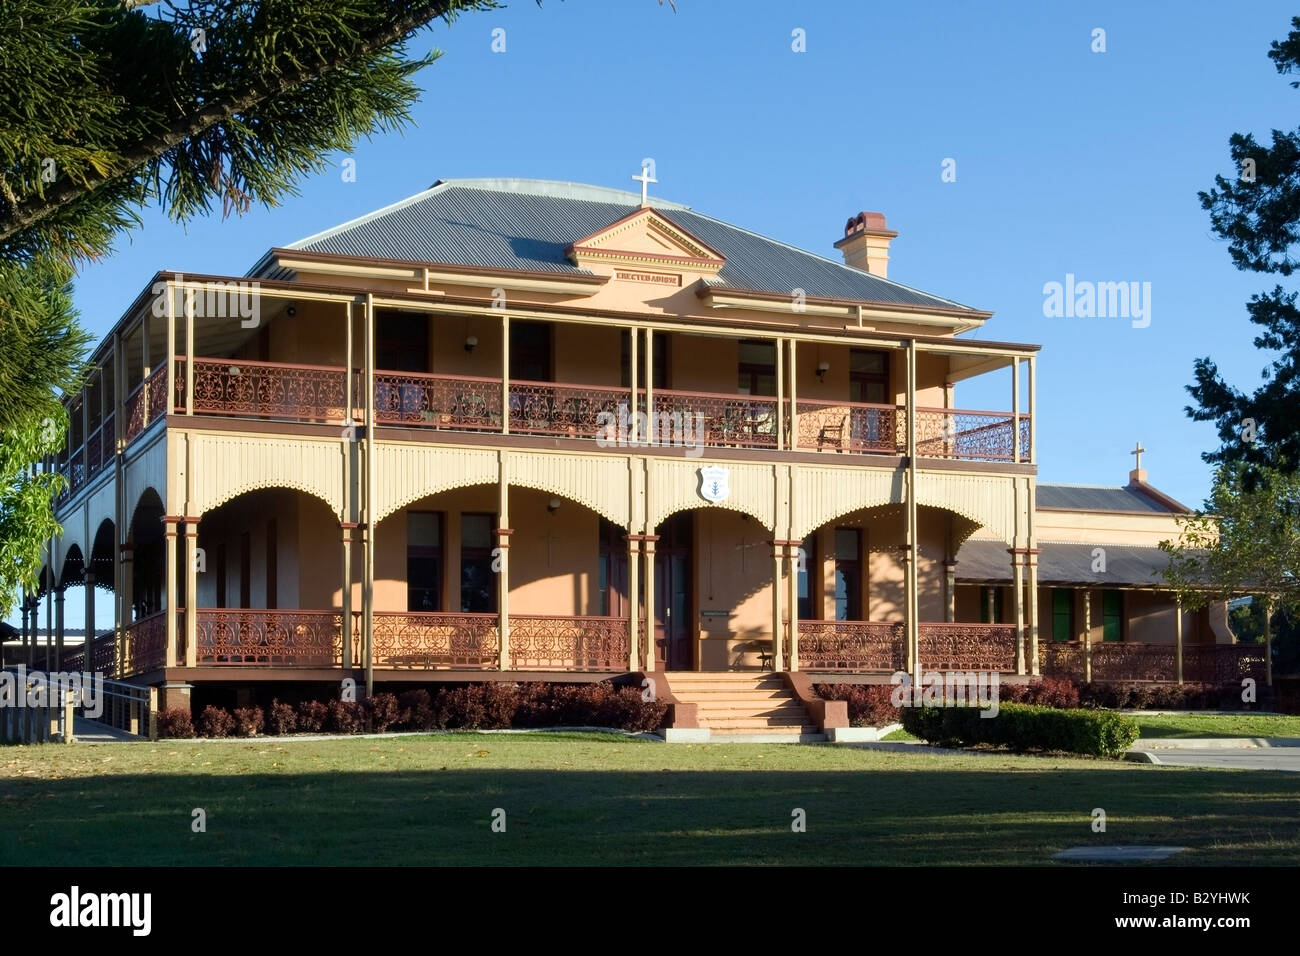 Imponente entrada a St Michael's Convento, Maryborough, Queensland Foto de stock